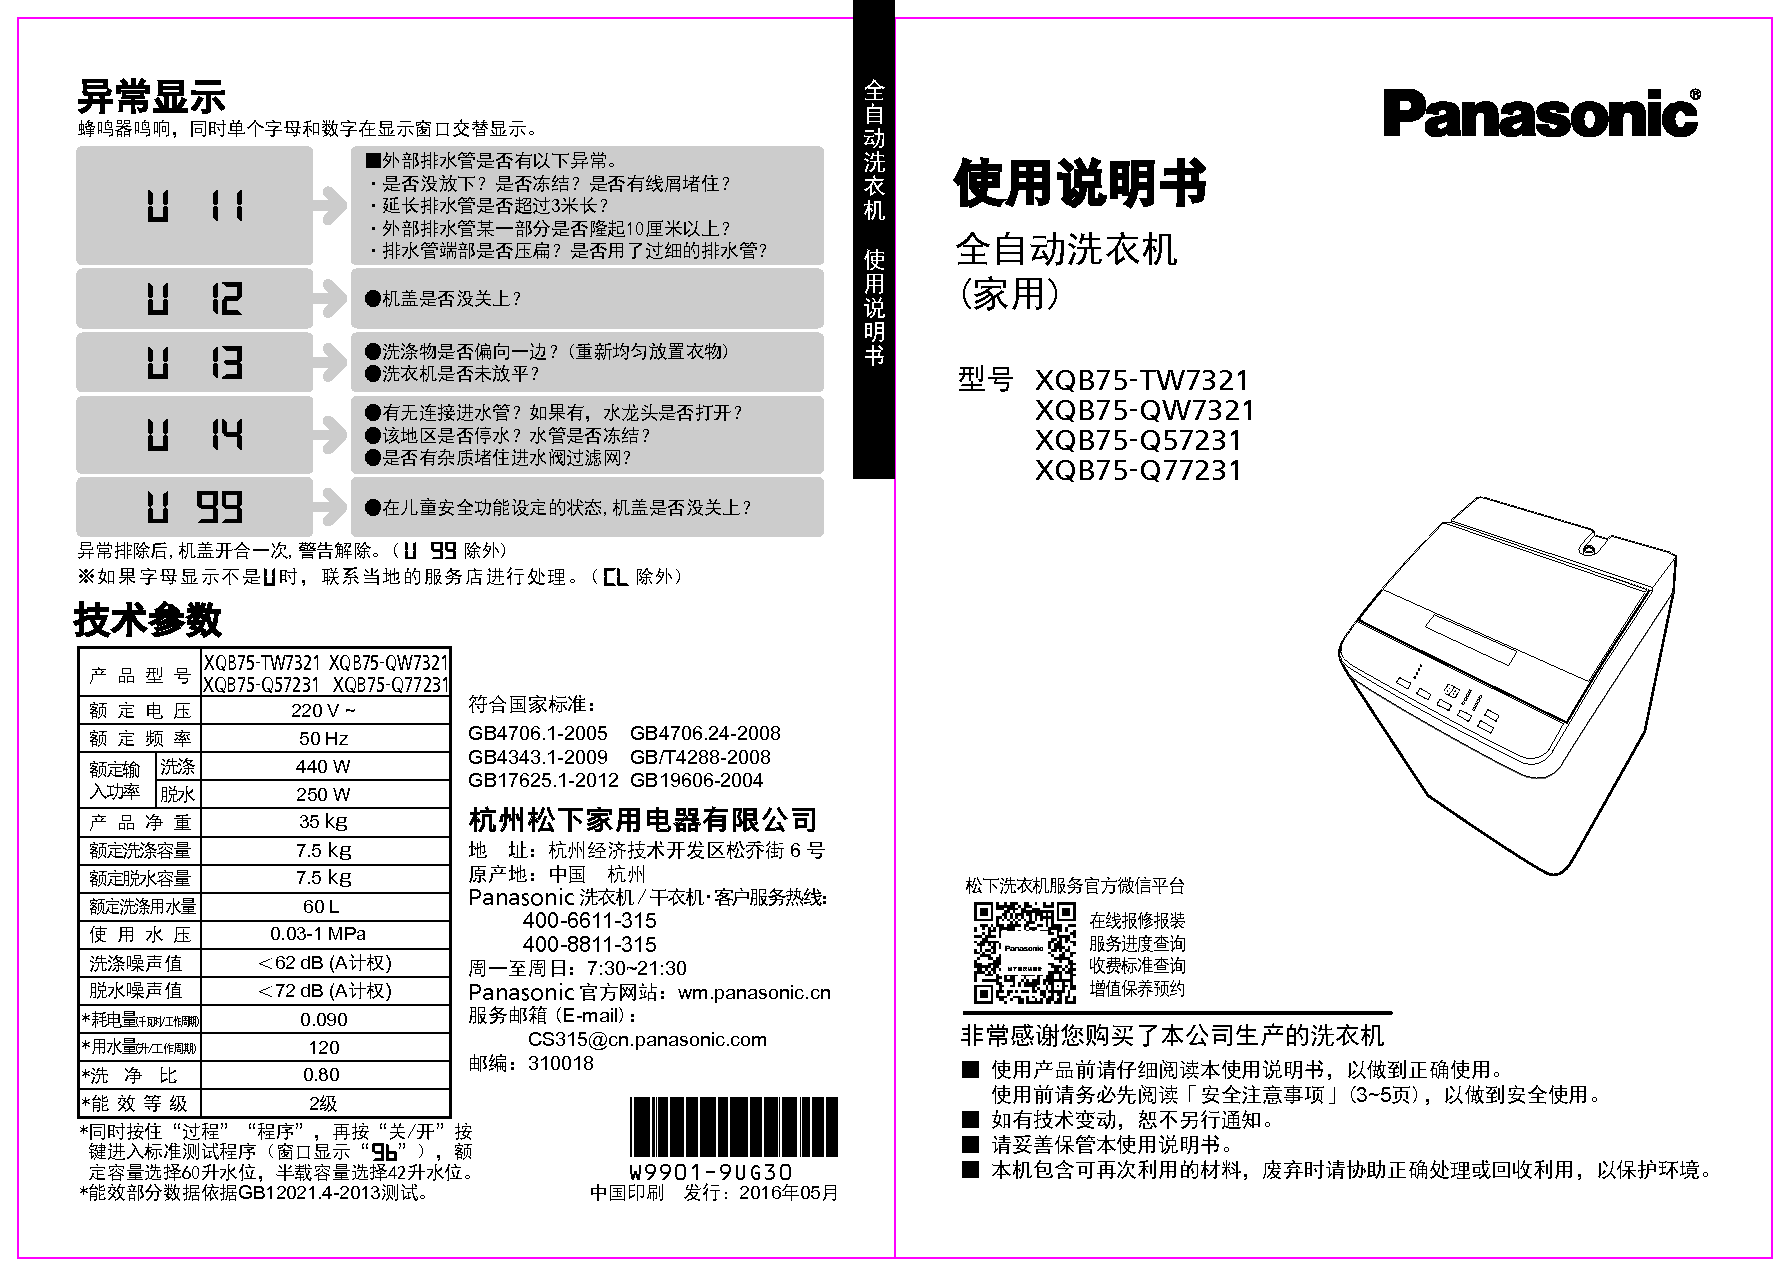 松下 Panasonic XQB75-Q57231 使用说明书 封面